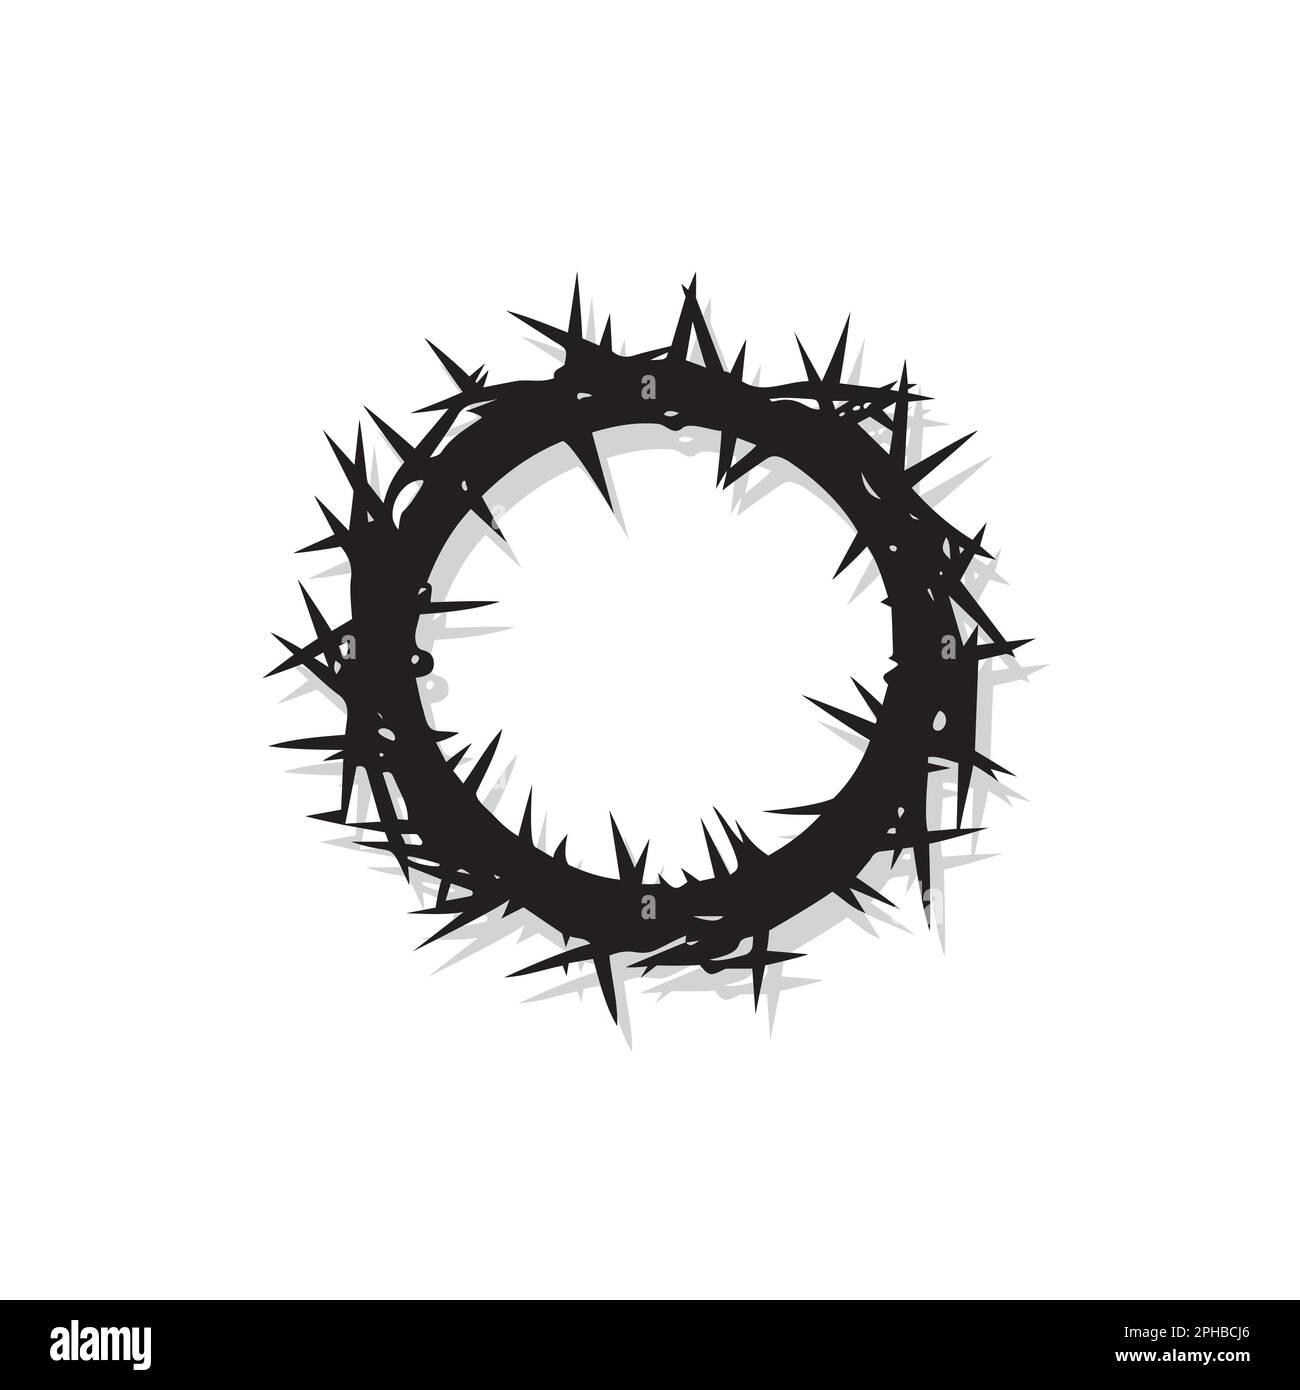 Immagini Stock - Corona Di Spine Su Uno Sfondo Bianco Pasqua Motivo  Religioso Per Commemorare La Resurrezione Di Gesù Di Pasqua. Image 44662644